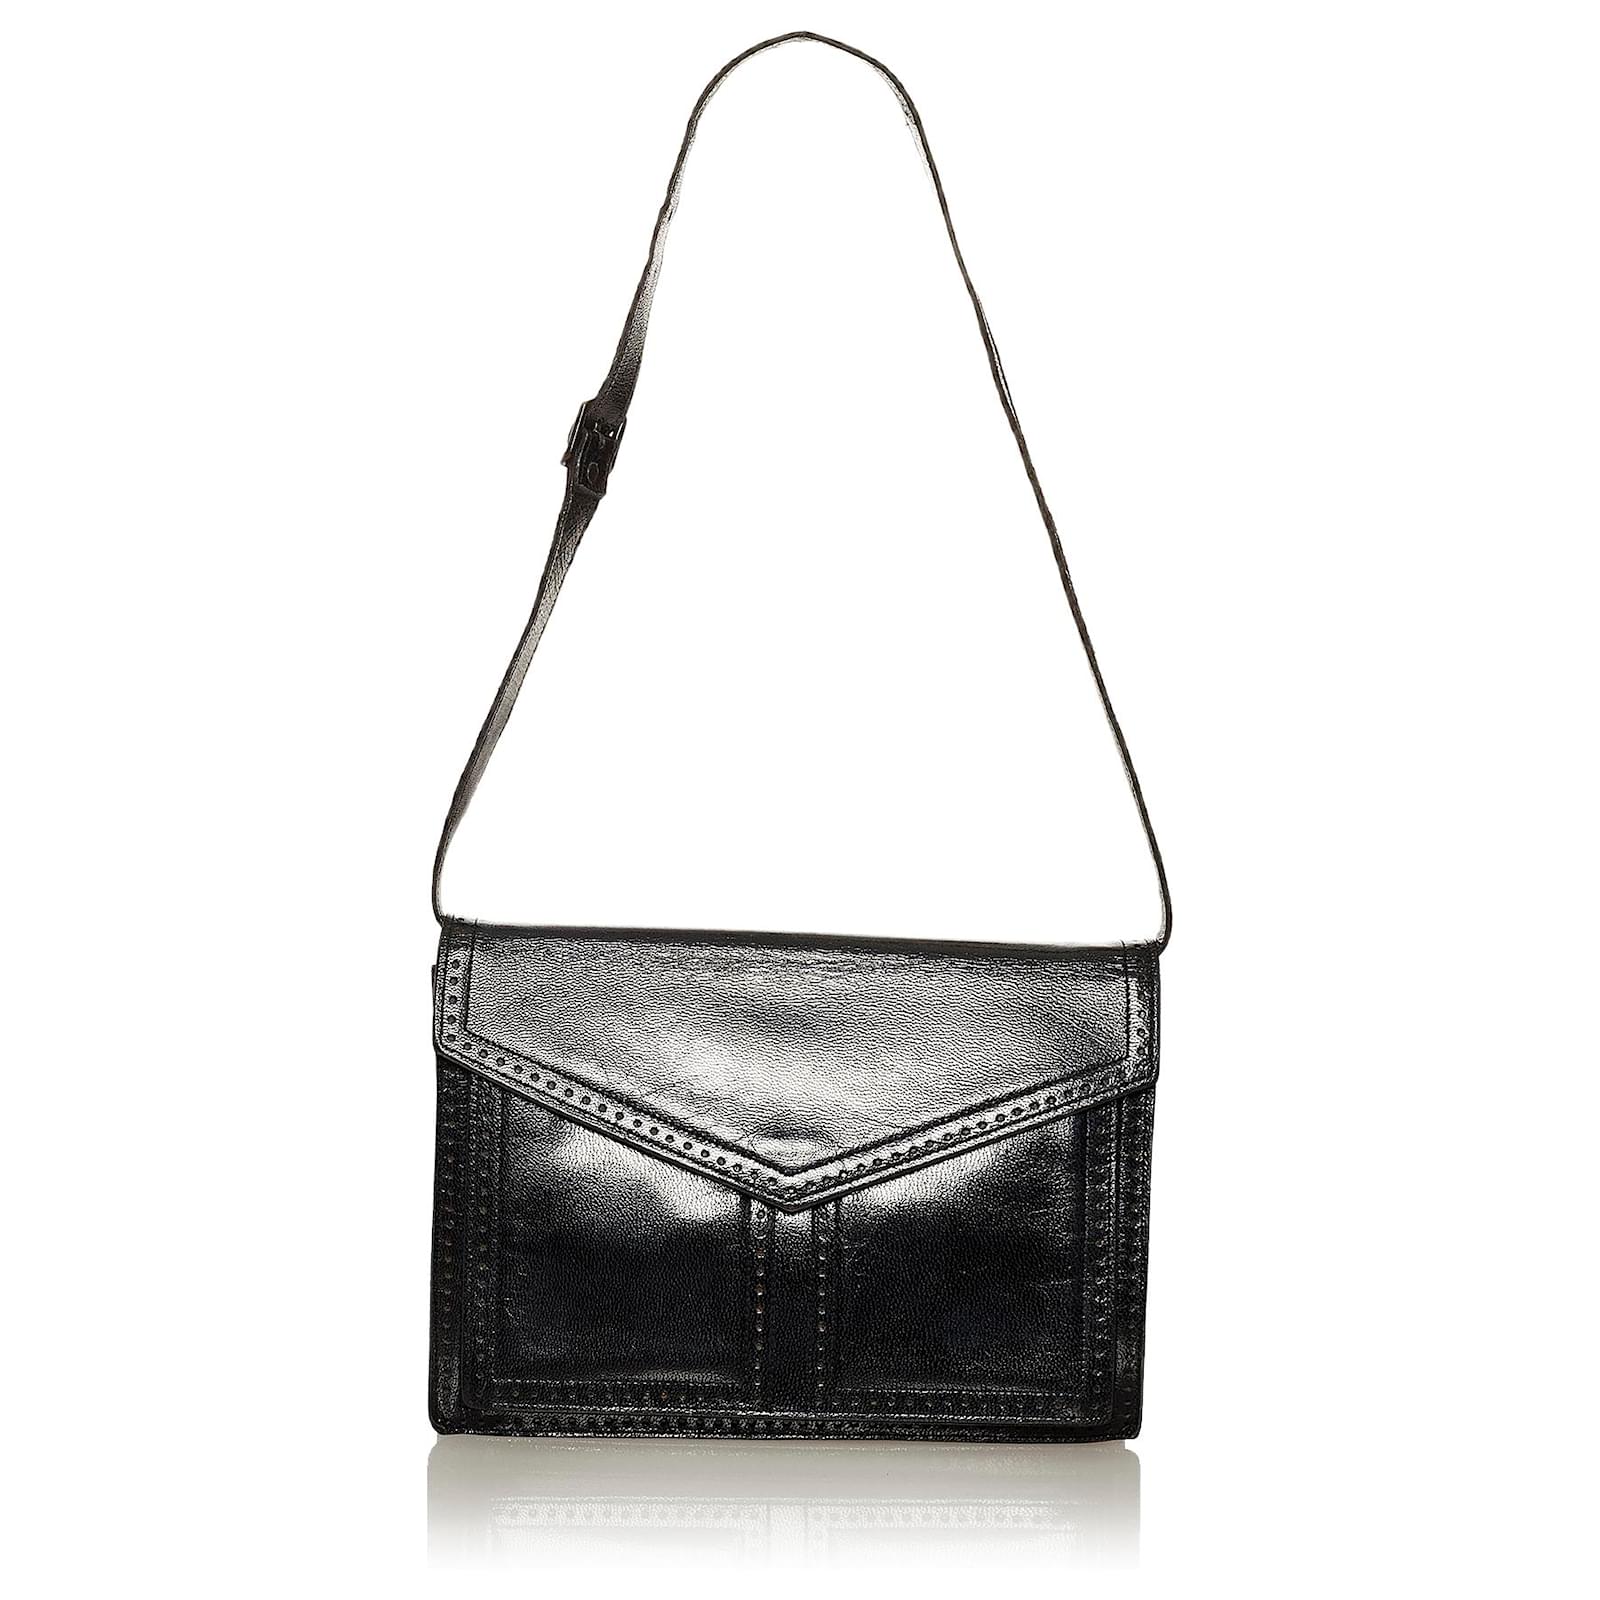 Yves Saint Laurent YSL Black Leather Shoulder Bag Pony-style calfskin ...